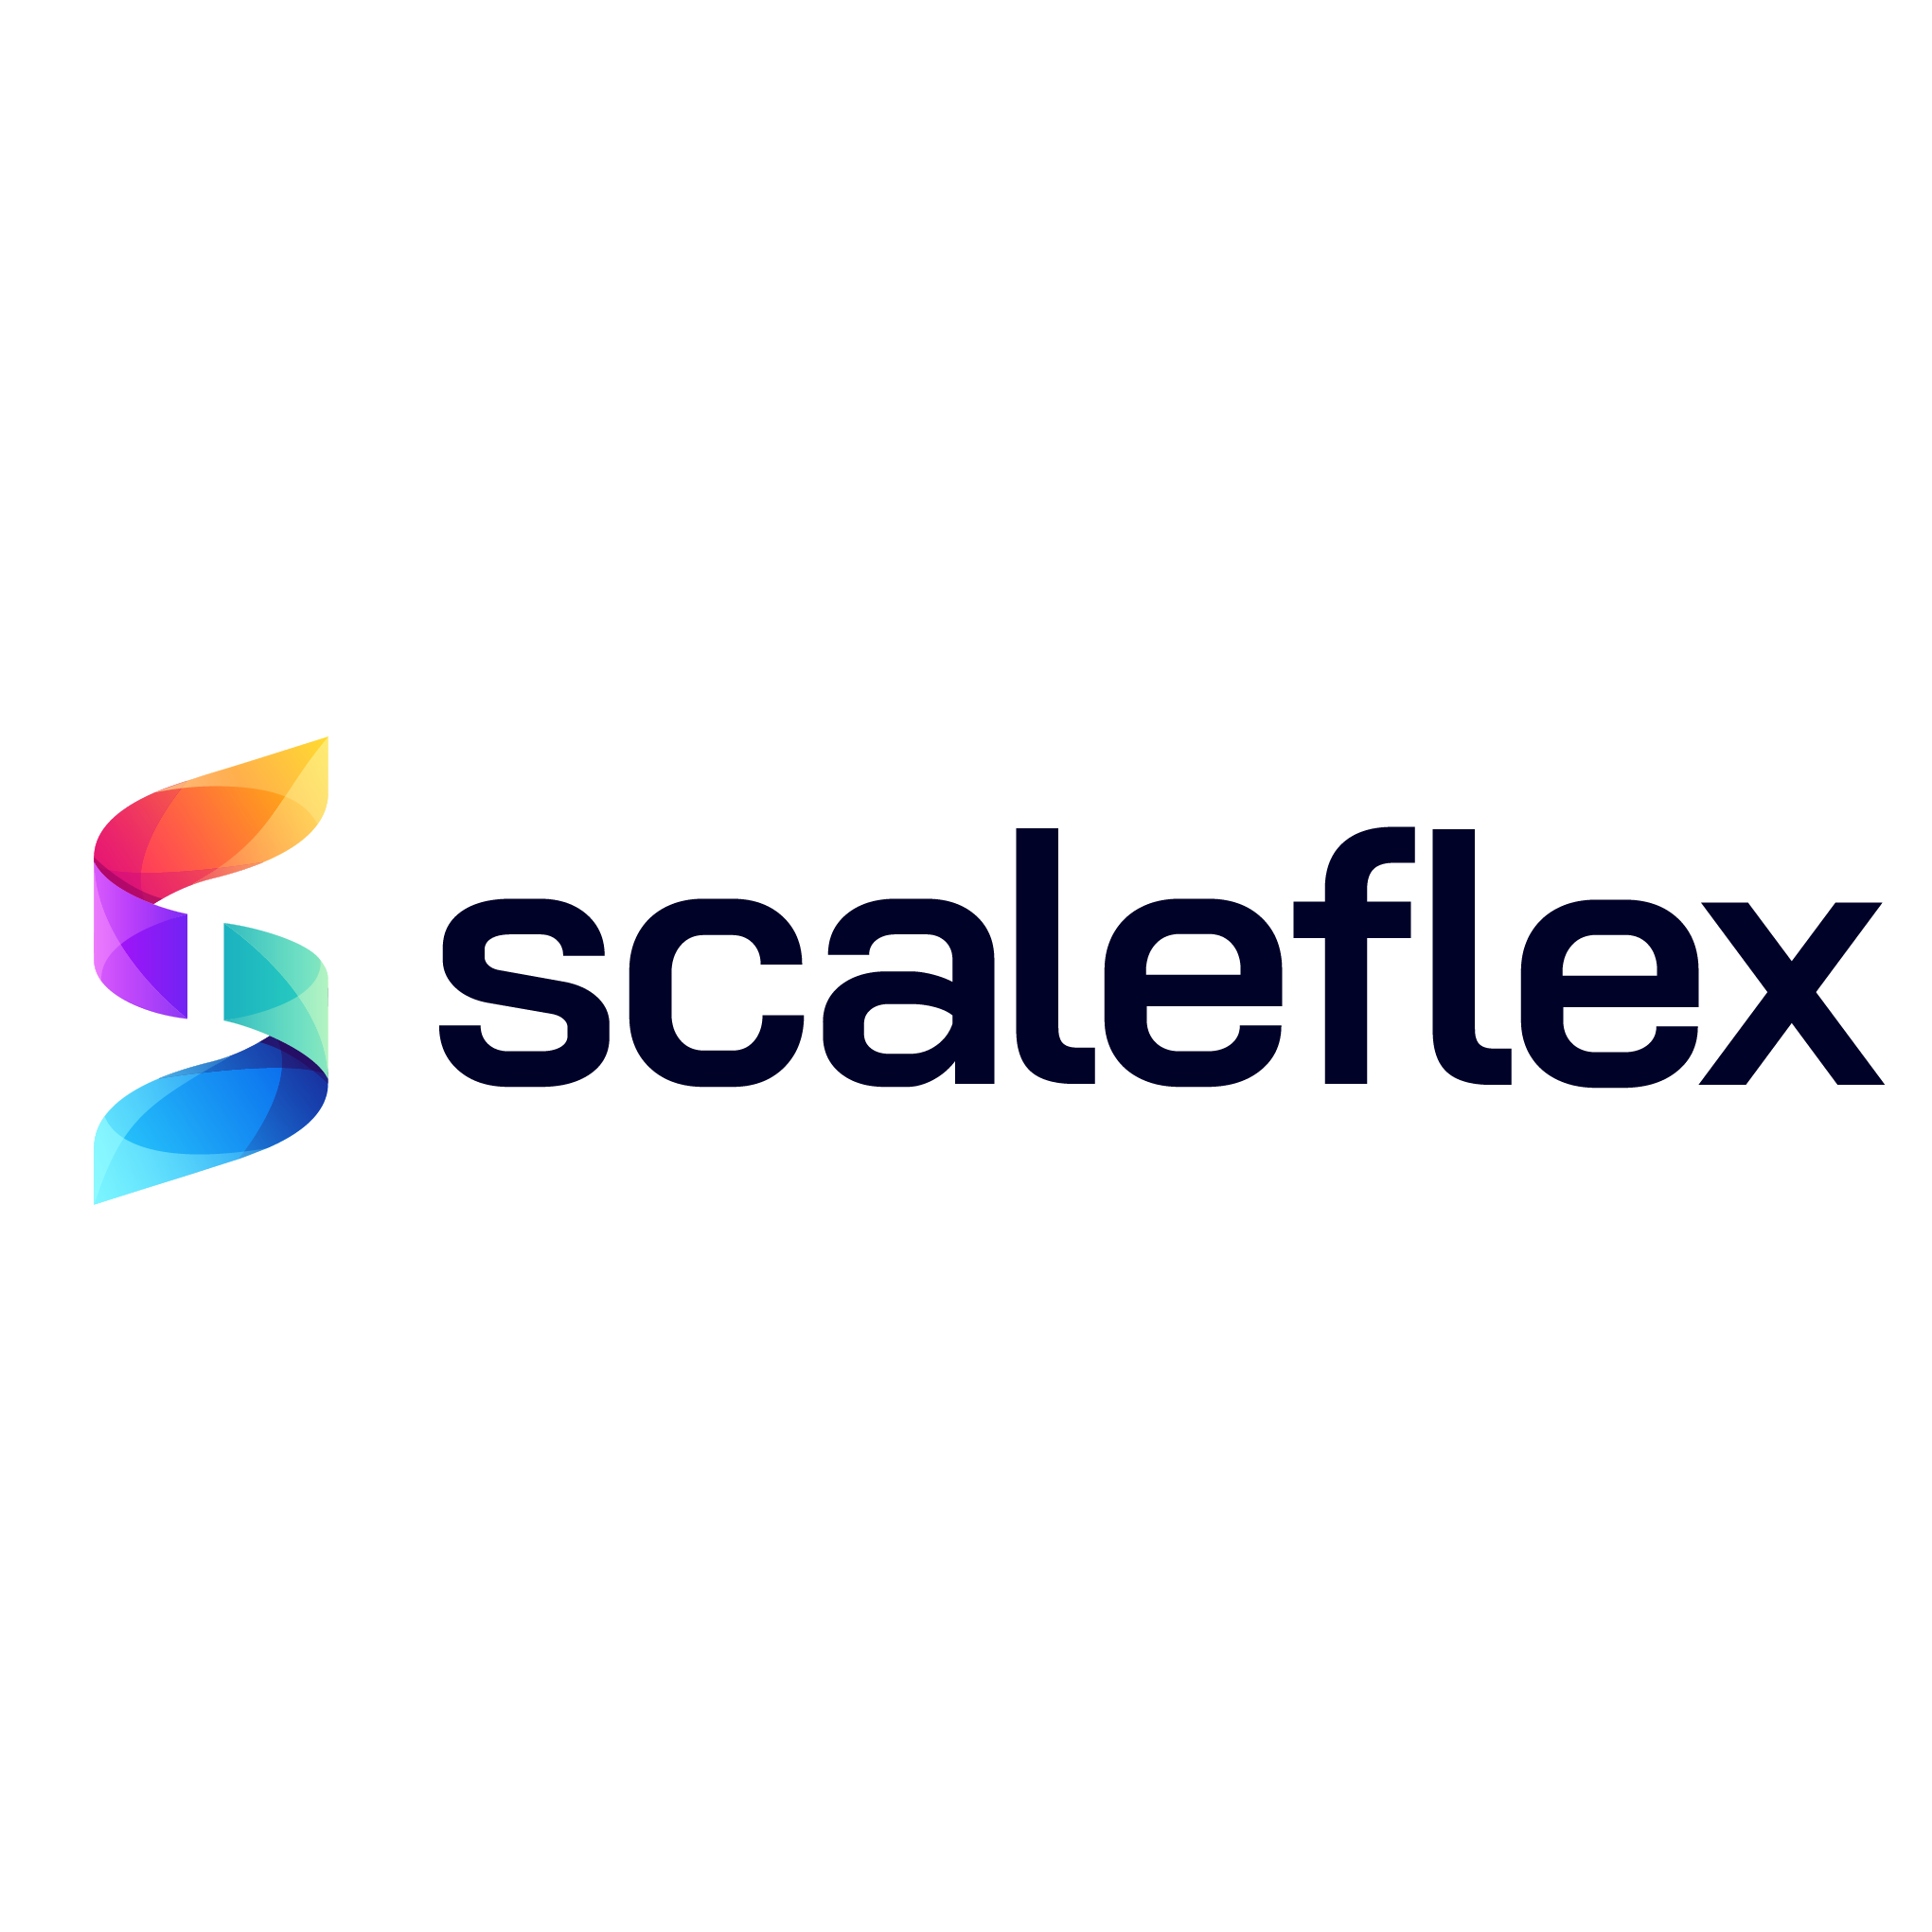 Scaleflex